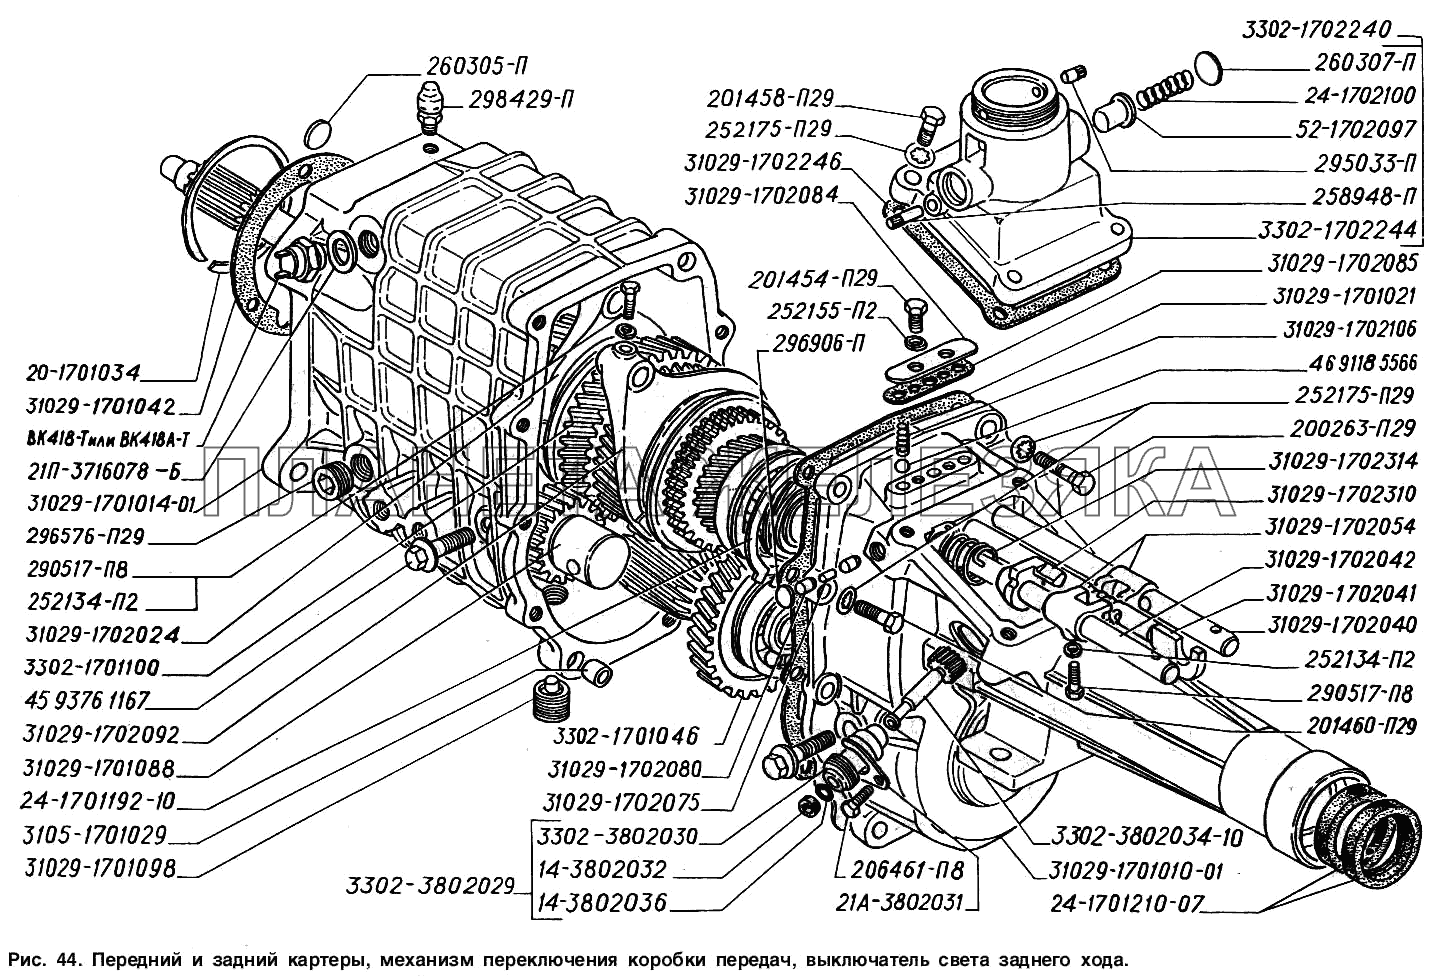 Передний и задний картеры, механизм переключения коробки передач, выключатель света заднего хода ГАЗ-2217 (Соболь)